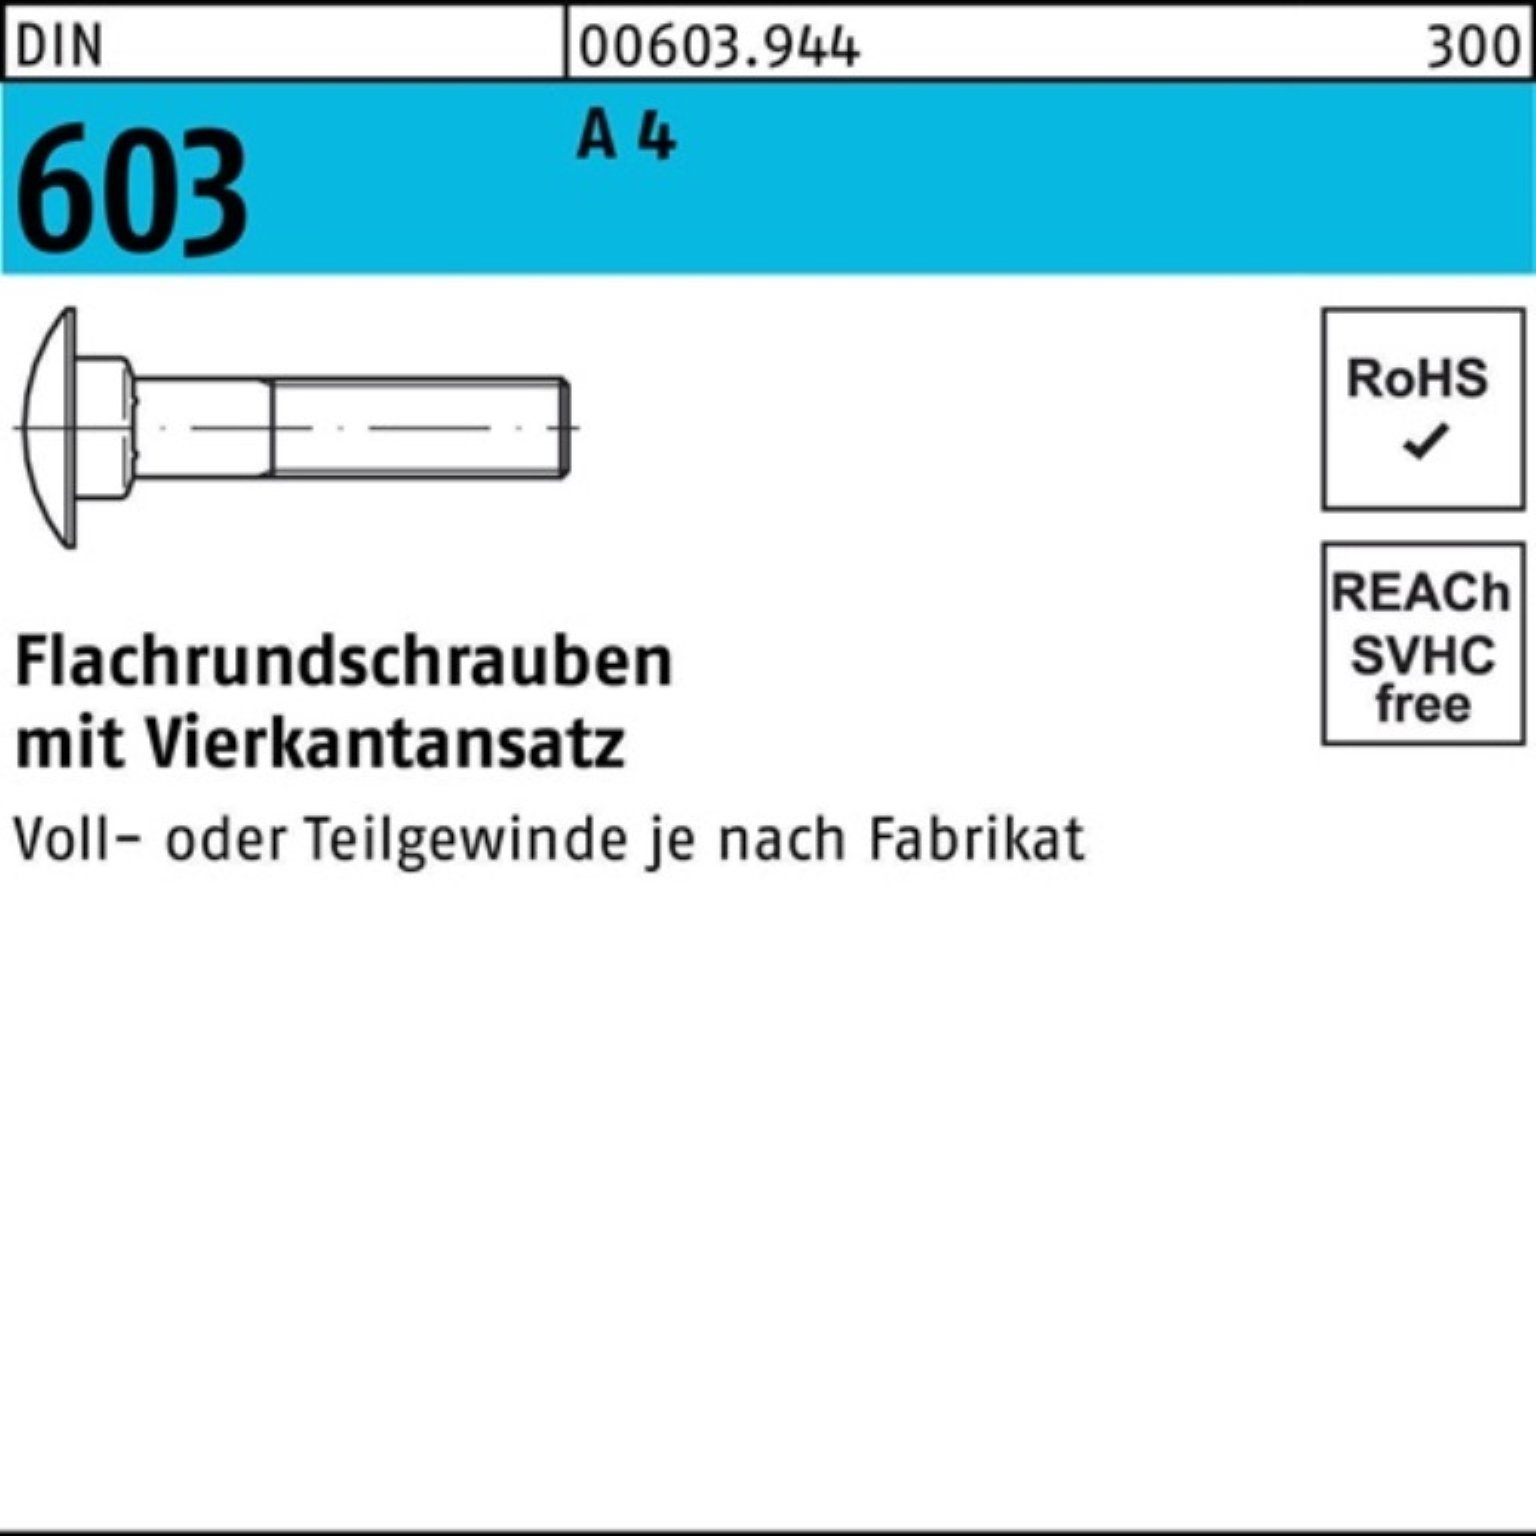 A Vierkantansatz Reyher 4 100er M8x 45 Stü 10 Flachrundschraube Pack Schraube DIN 603